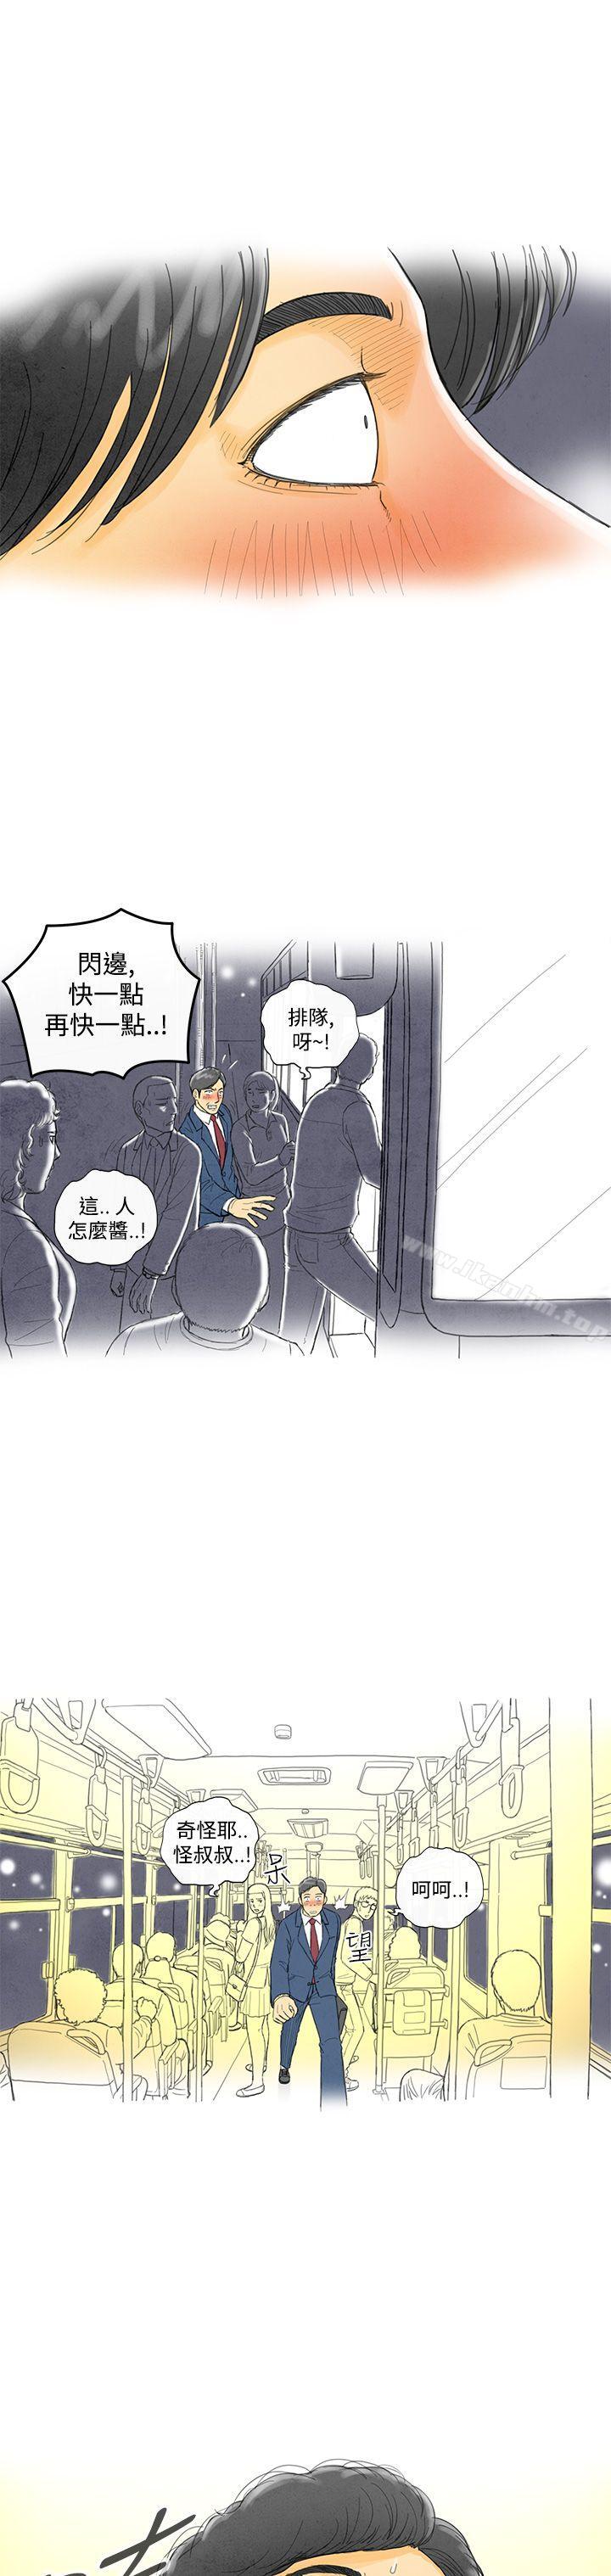 離婚報告書 在线观看 第1話-搭瞭10次公車的男人<1> 漫画图片5